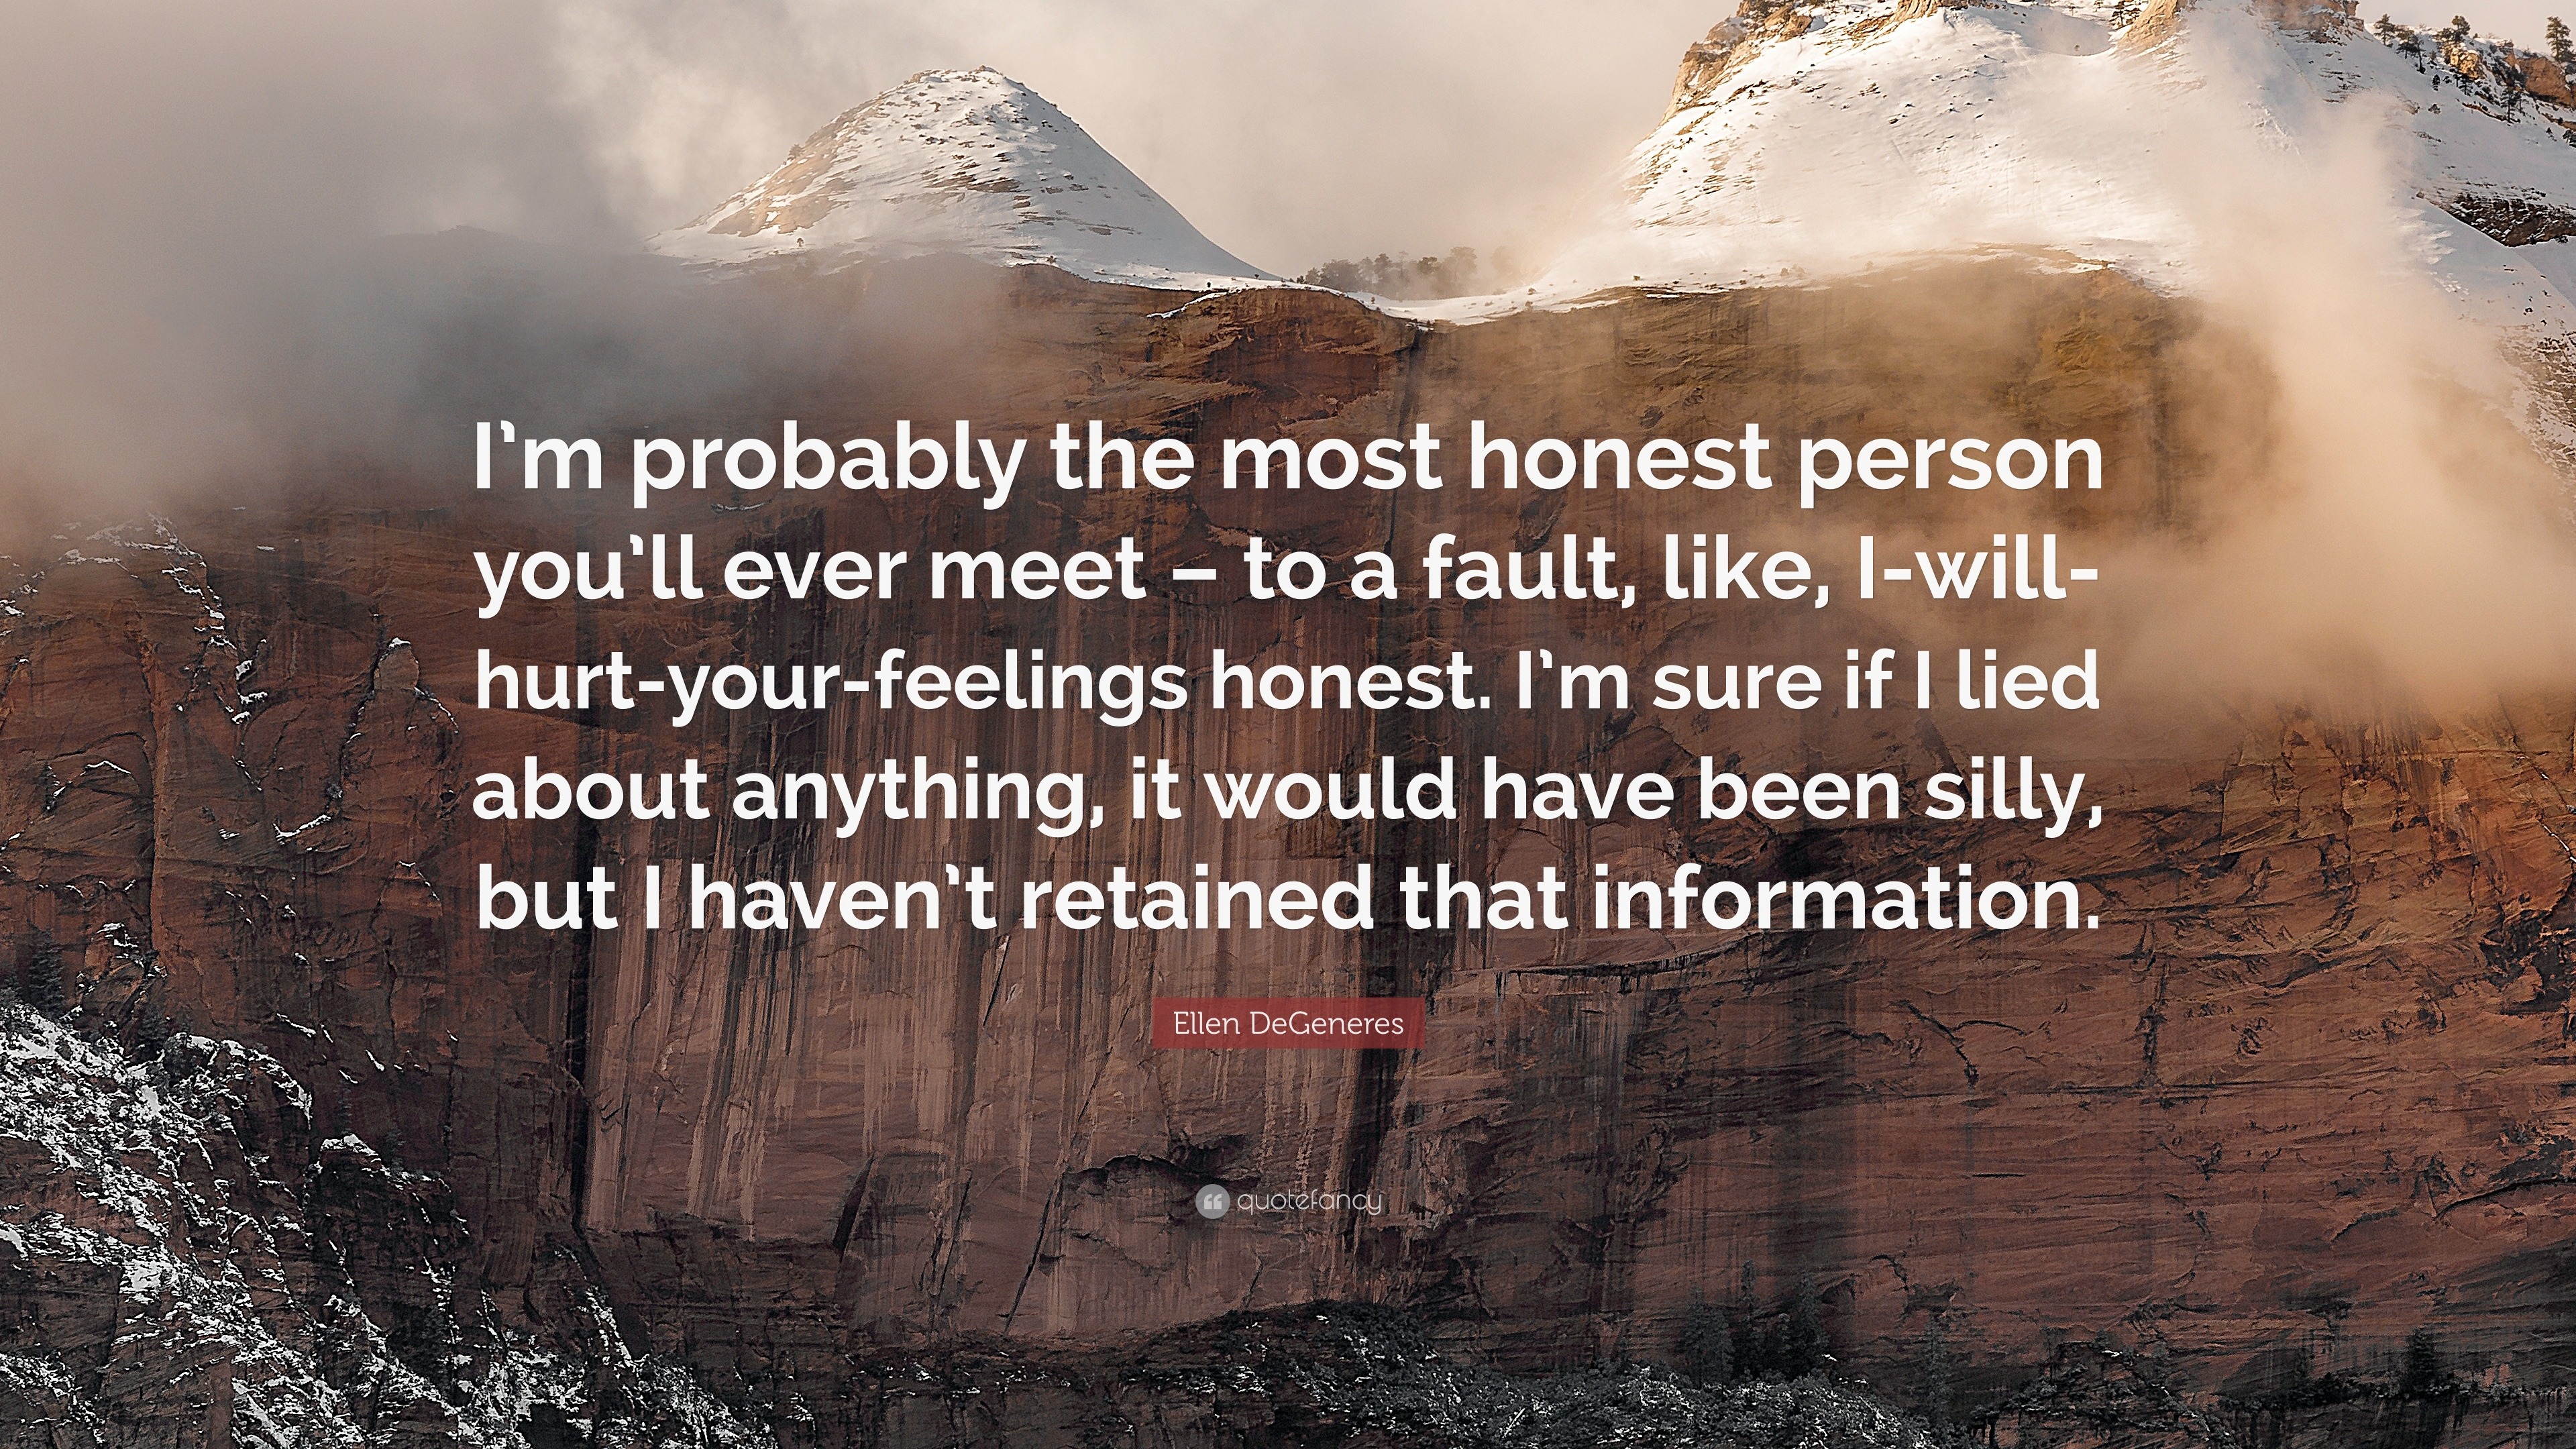 Ellen DeGeneres Quote “I m probably the most honest person you ll